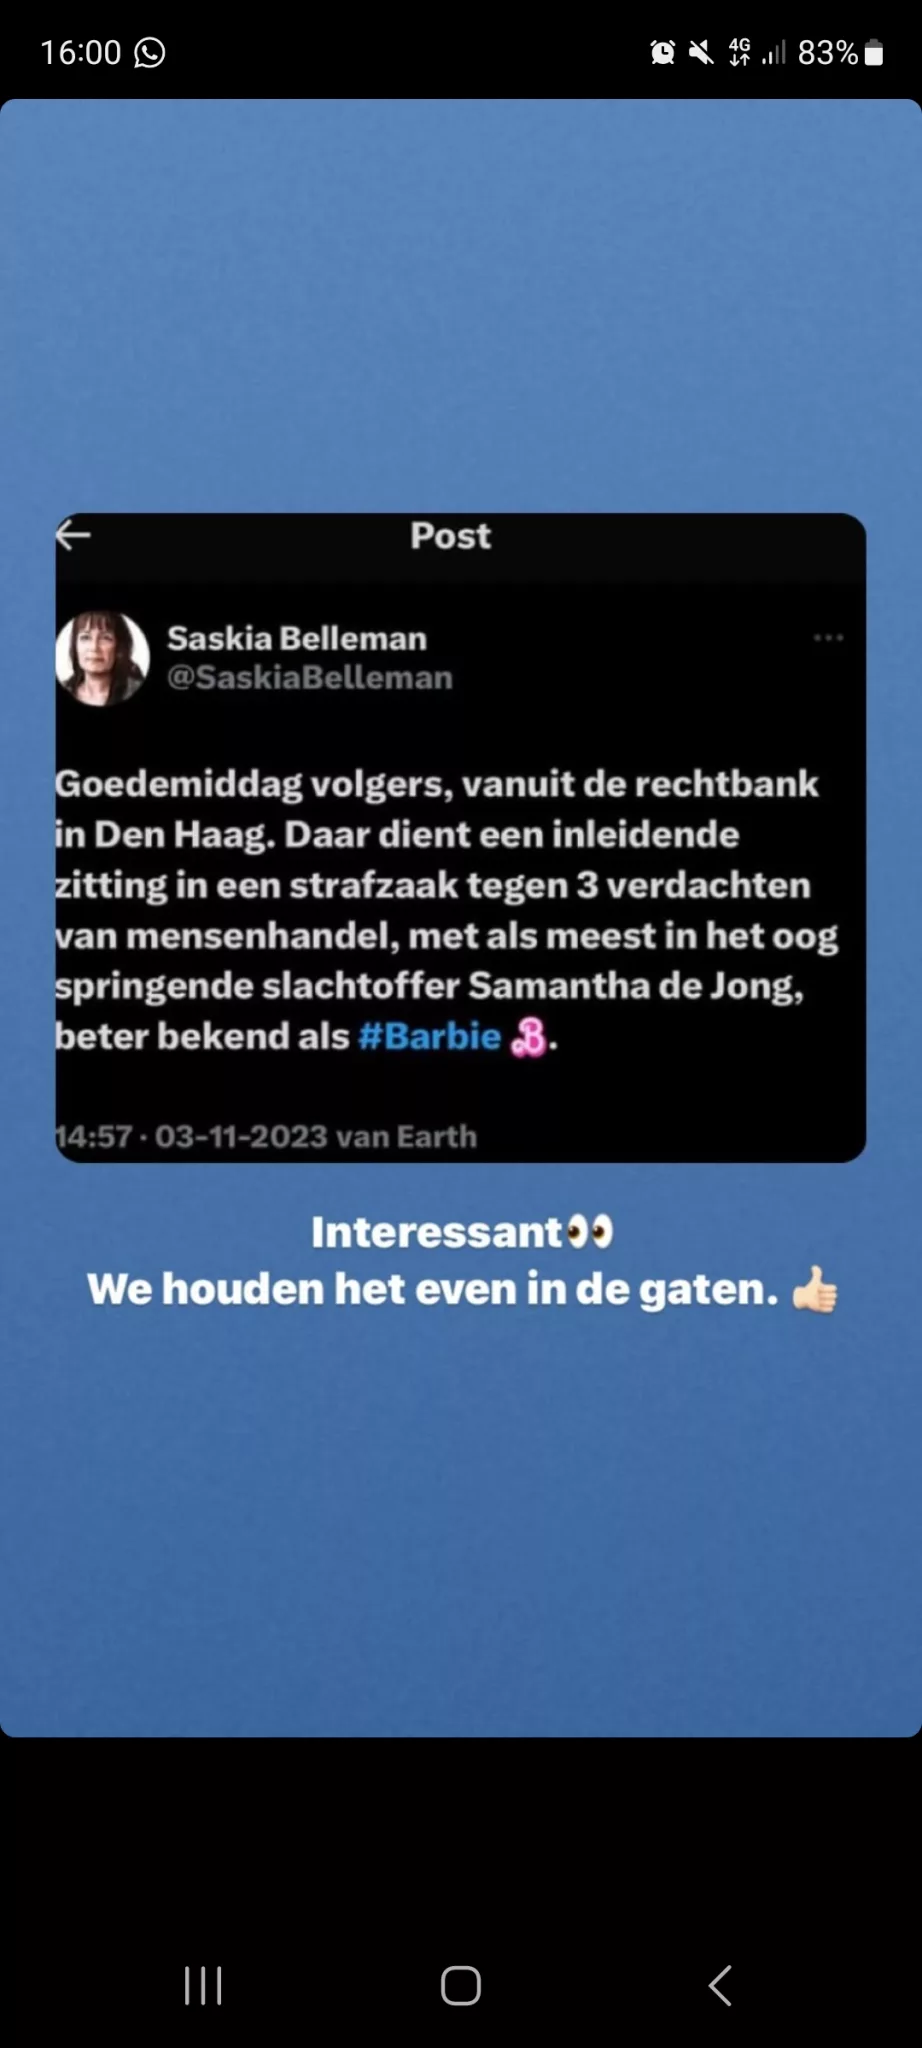 Samantha de Jong